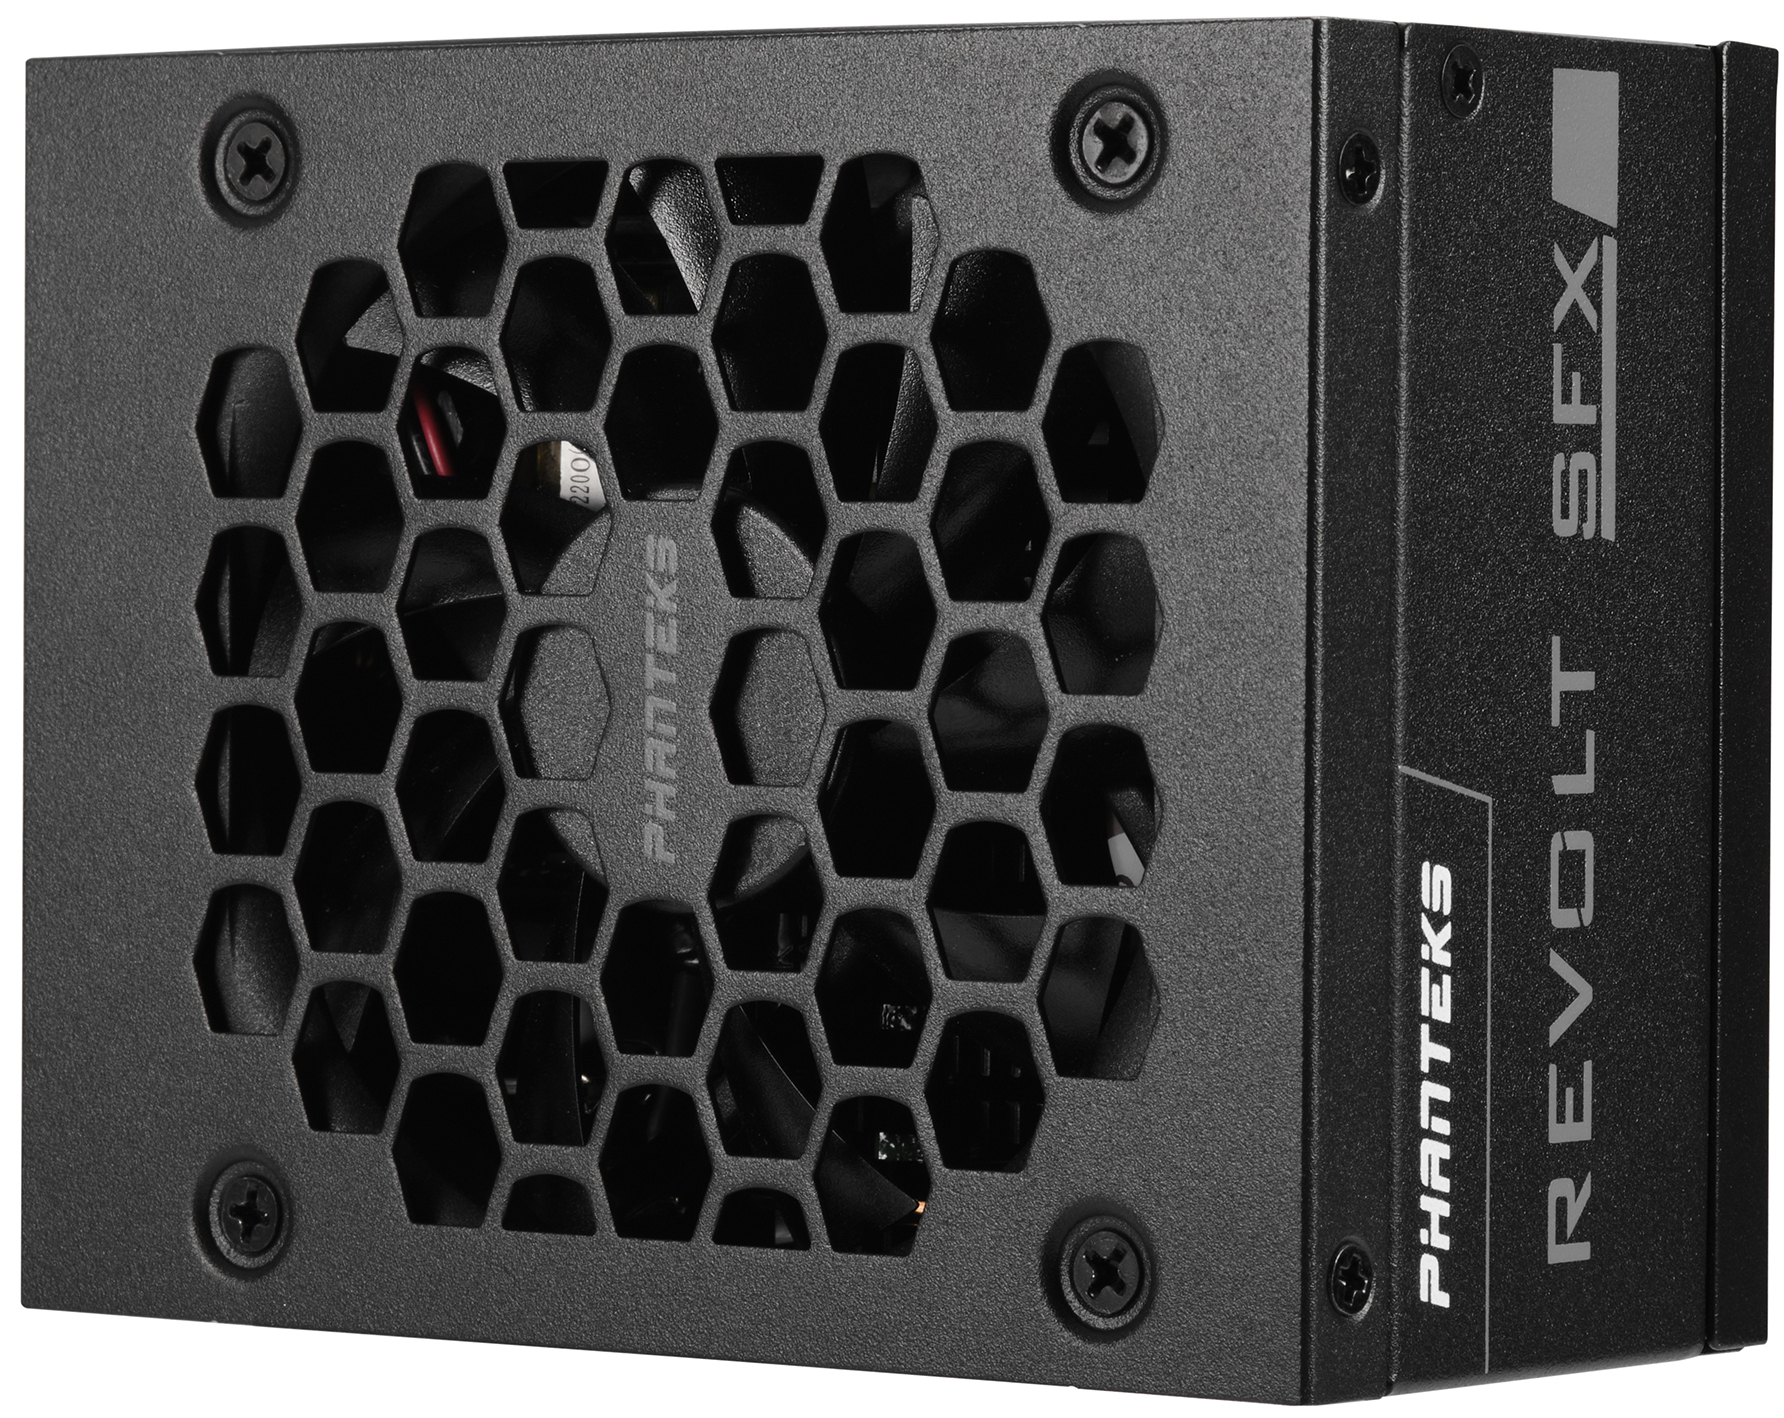 Phanteks - Fonte Modular ATX 3.0 Phanteks Revolt SFX 850W 80+ Platinum